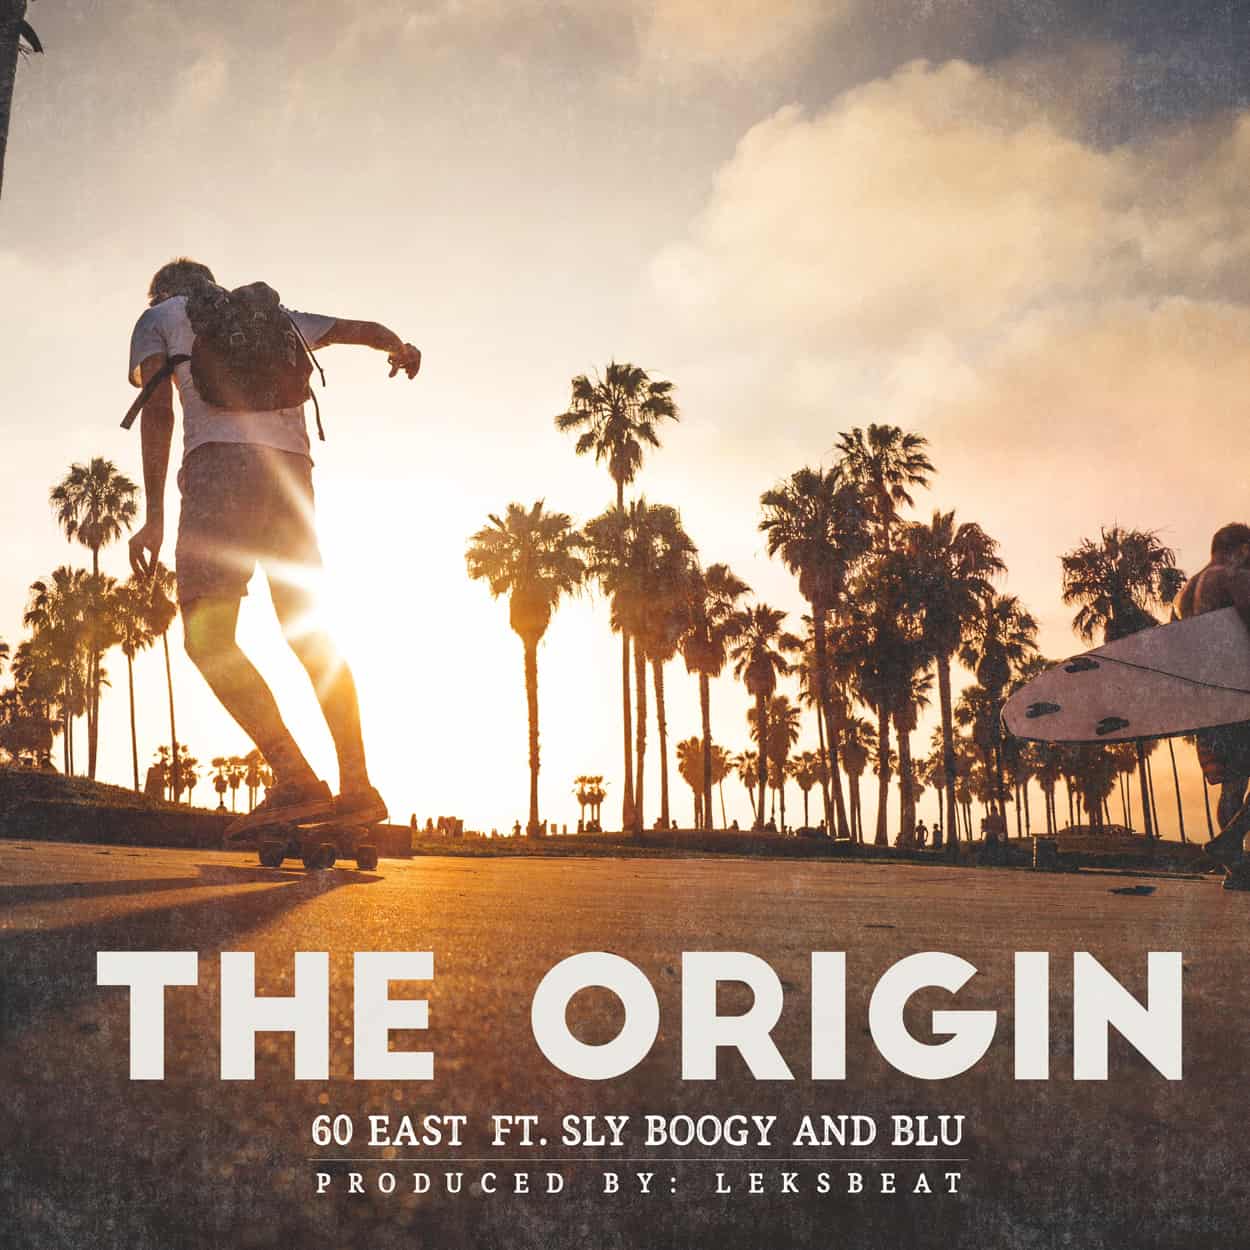 60 east - the origin - album art design